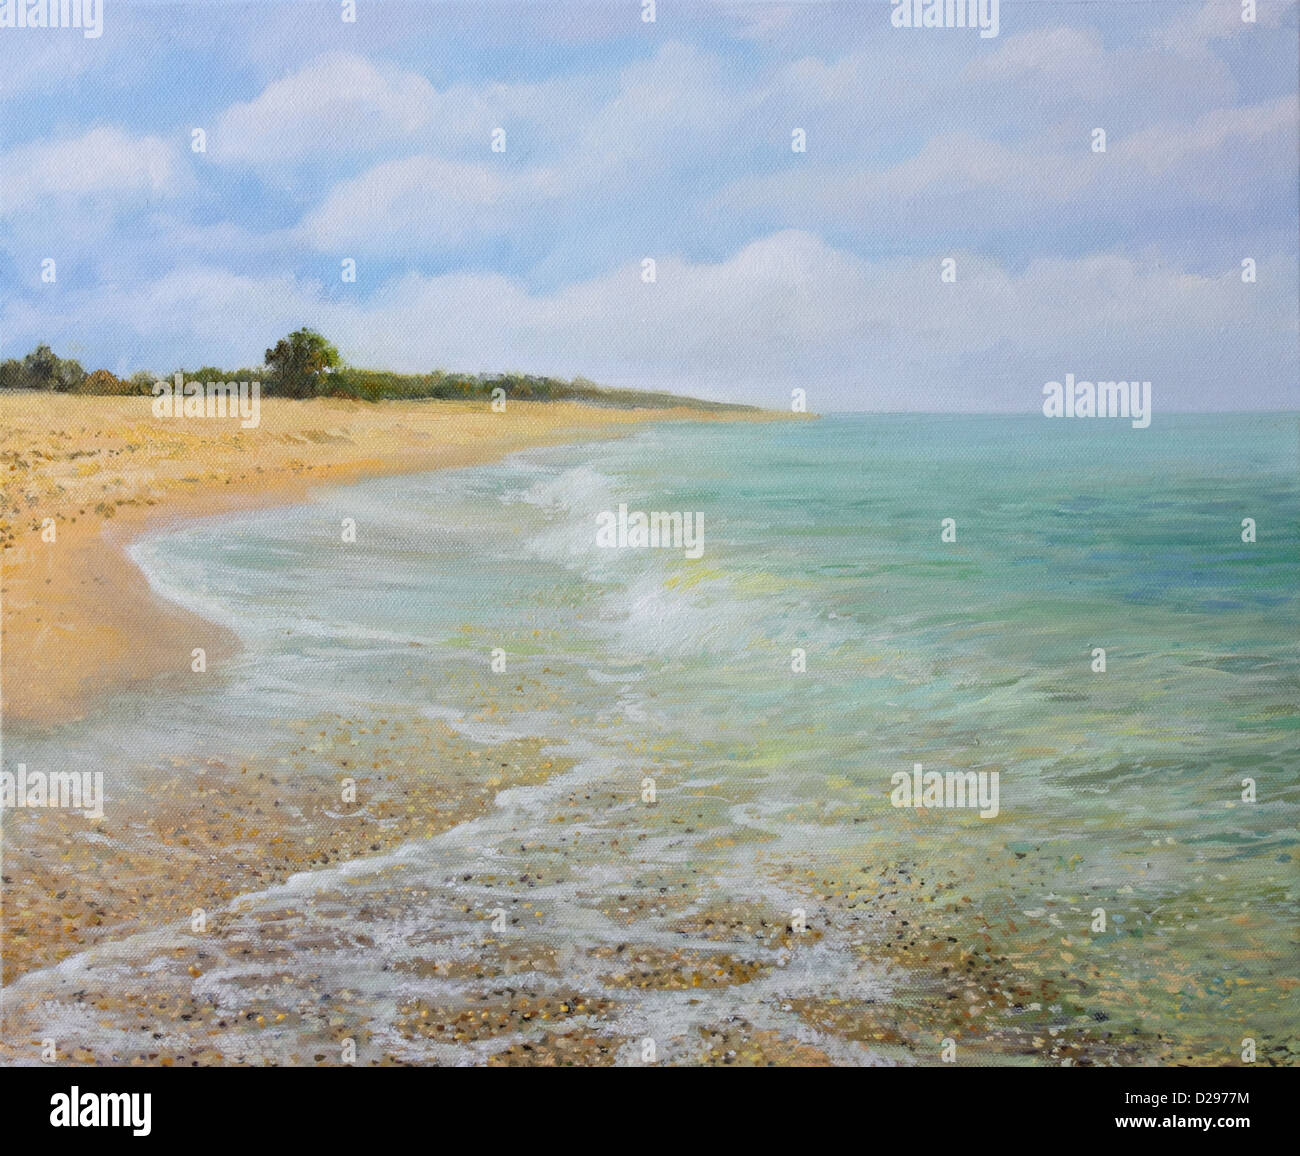 Une peinture à l'huile sur toile de la plage de sable près de Krapets en été avec calme, invitant l'eau claire. Banque D'Images